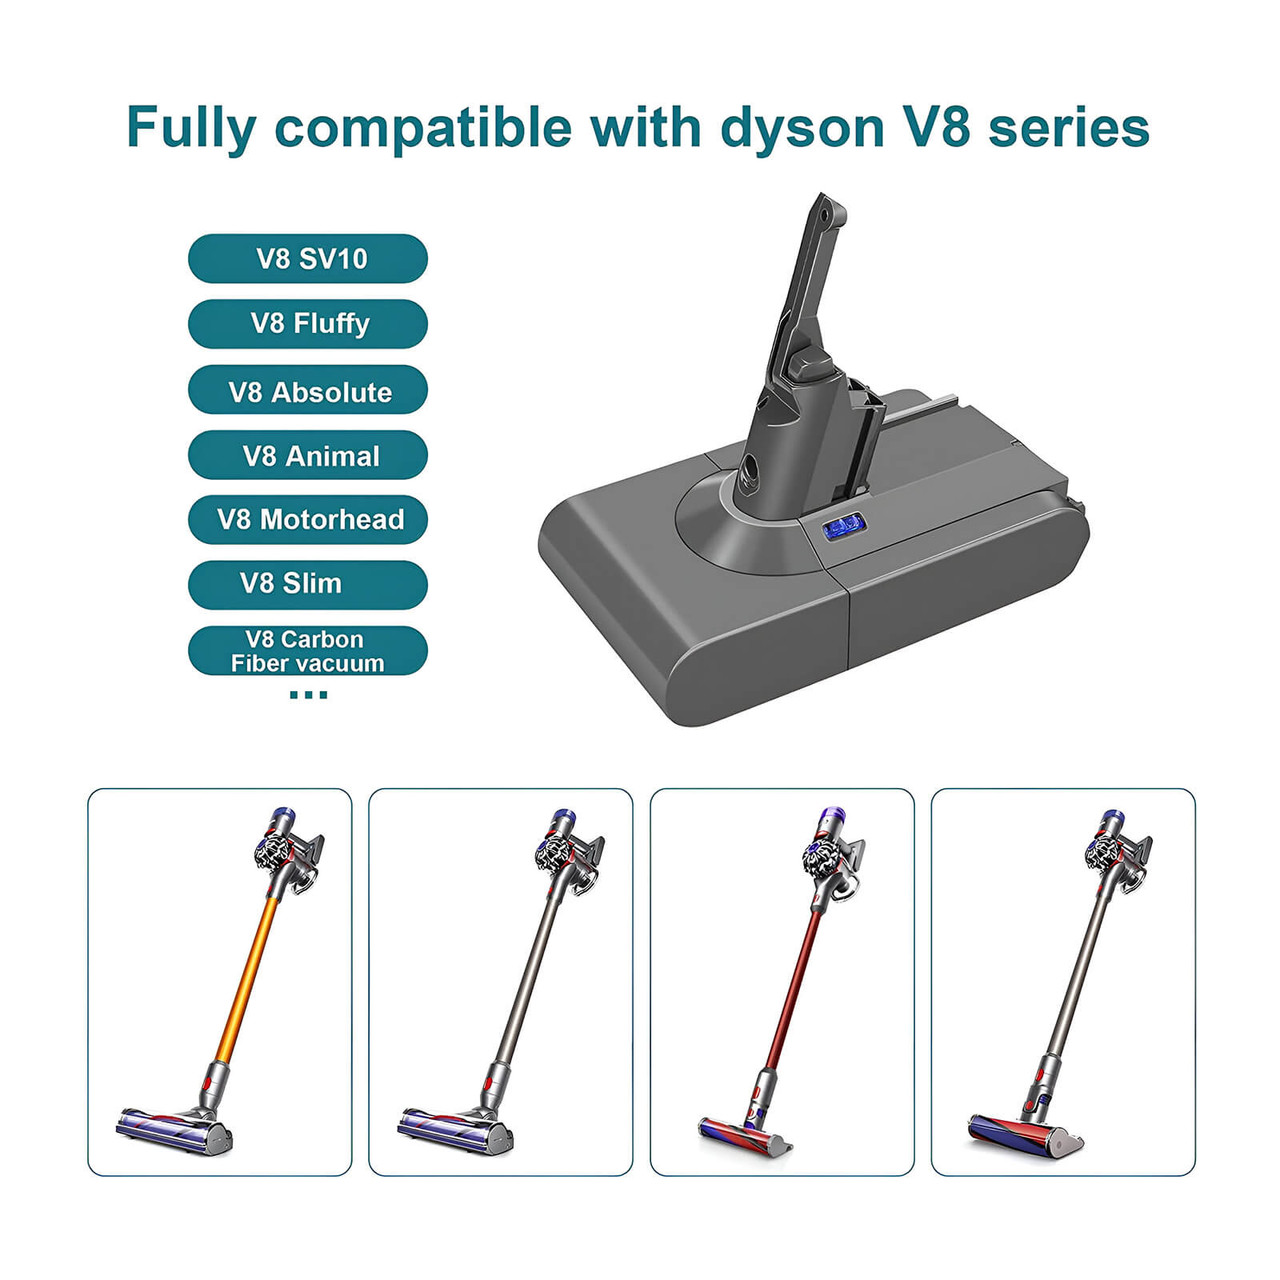 for DYSON V8, SV10 Battery Cordless Vacuum Cleaner, Animal